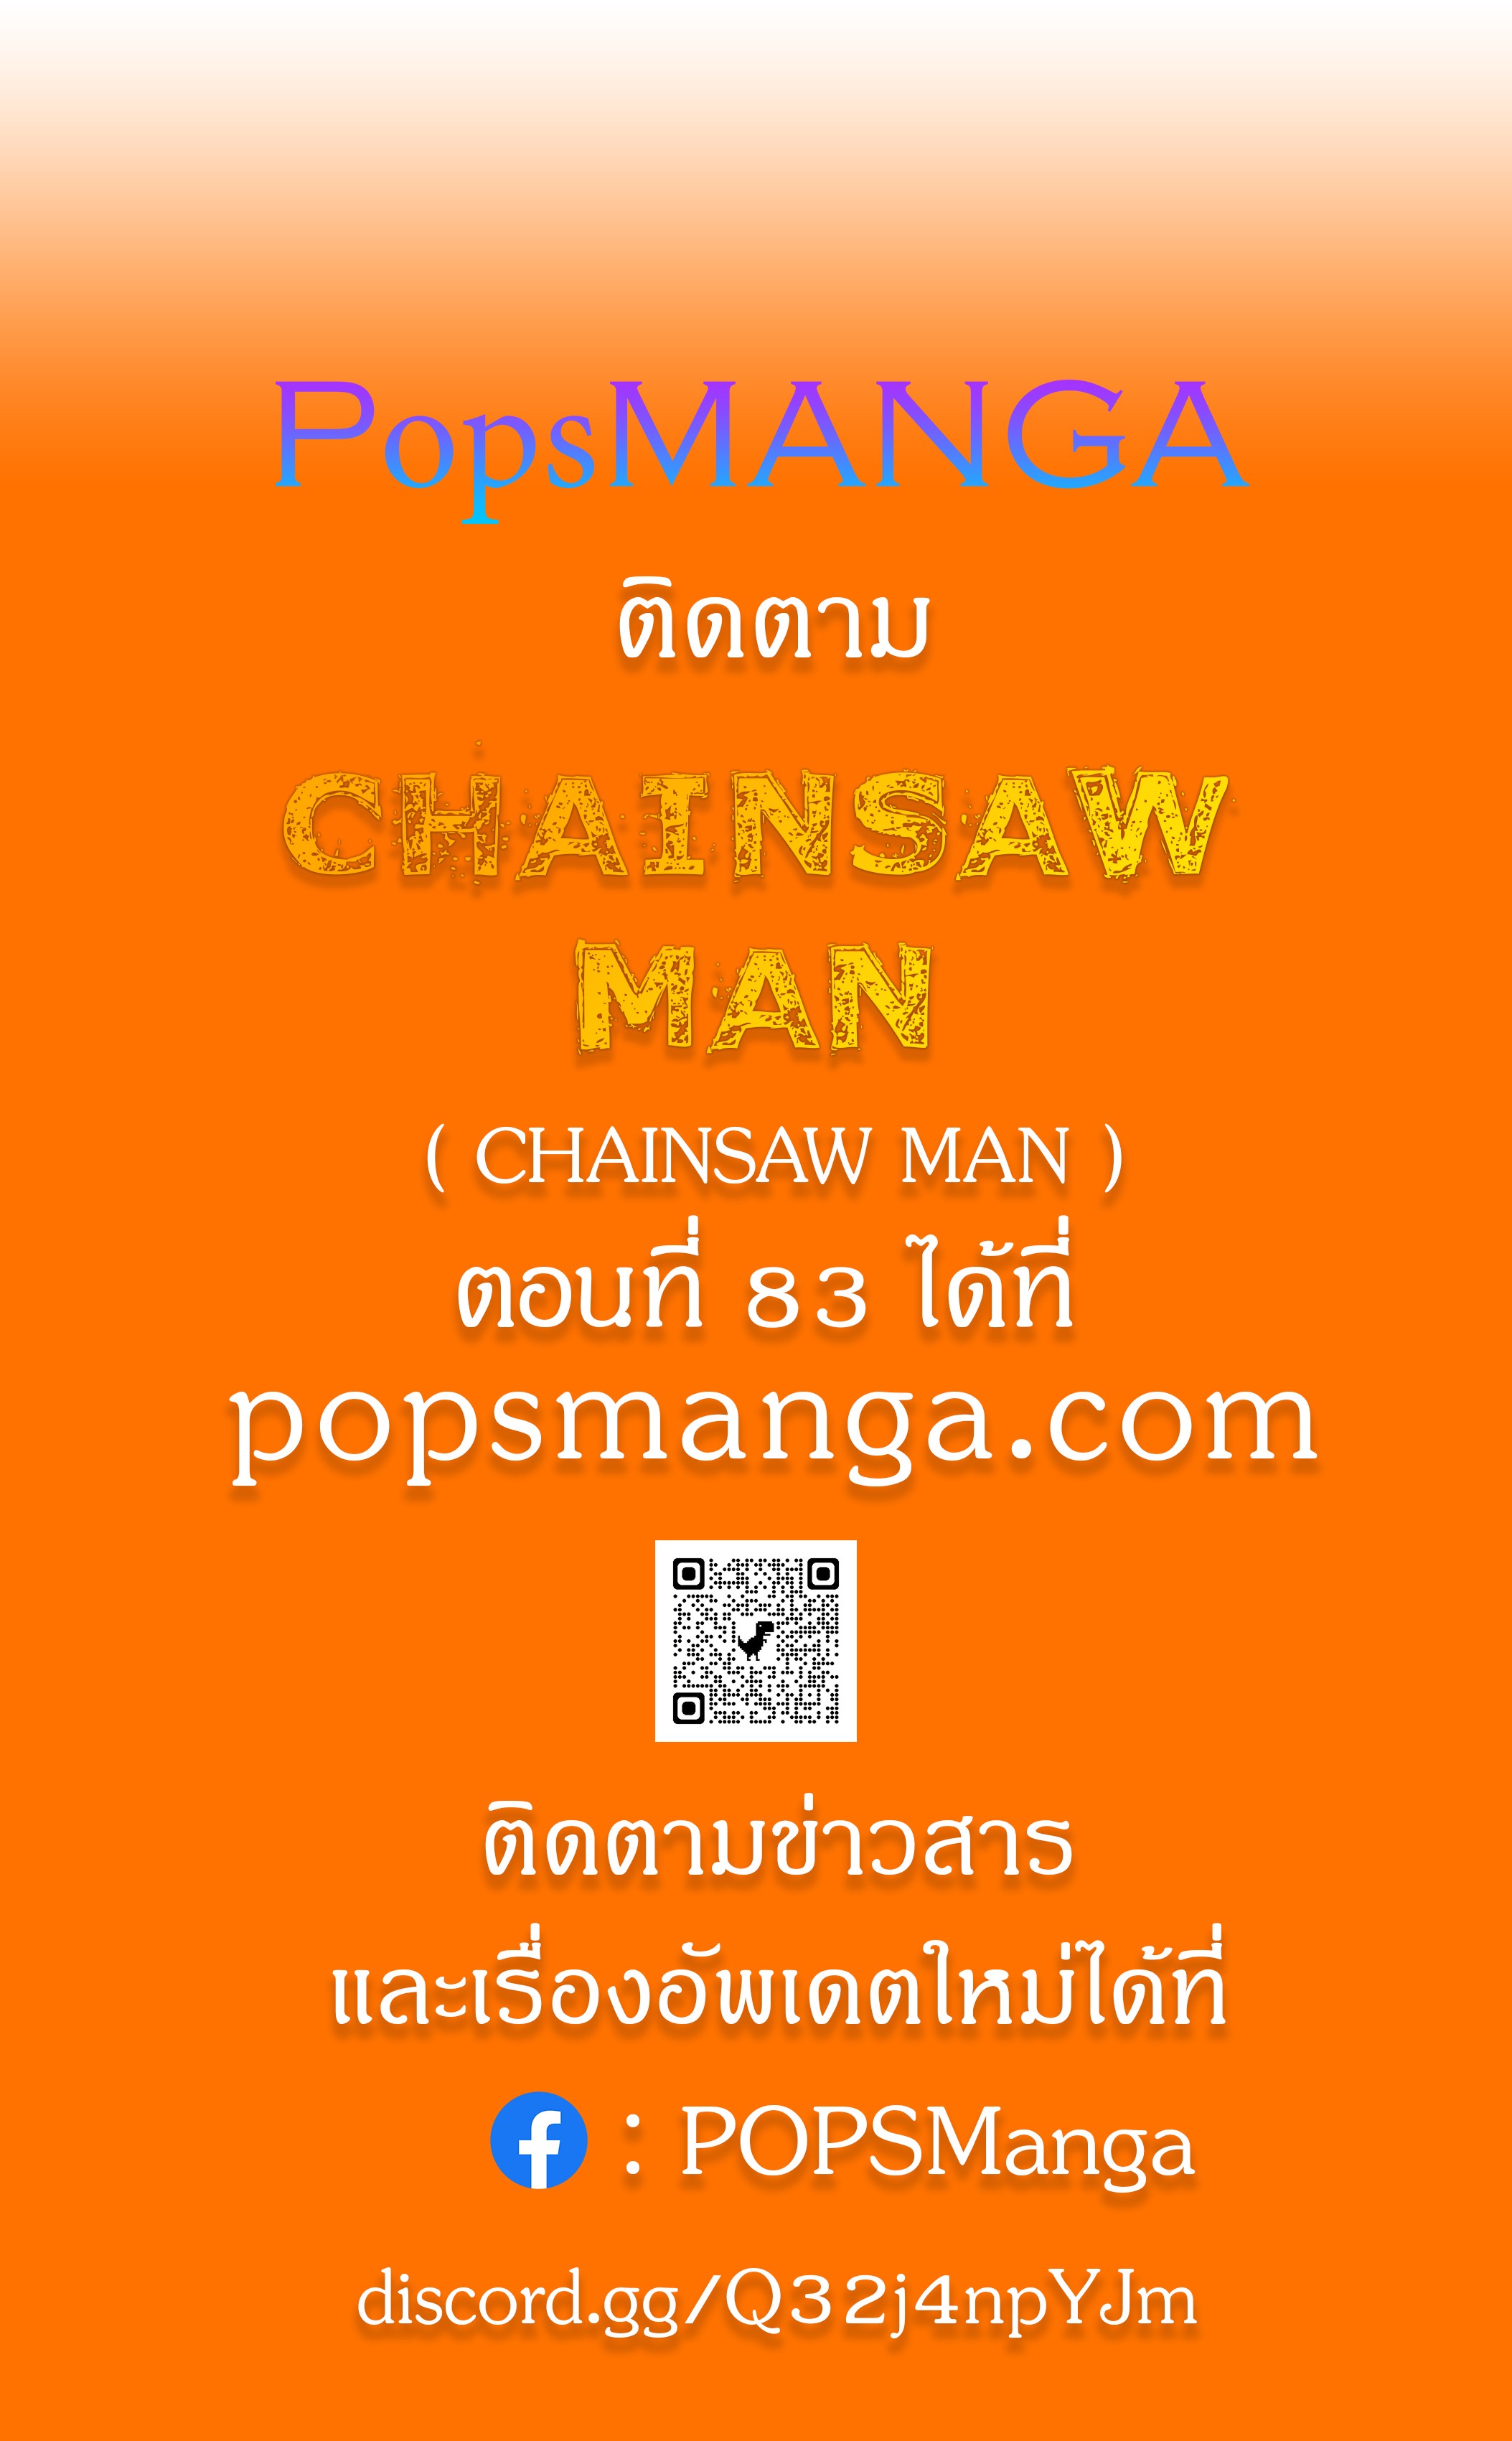 Chainsaw Man 82 (7)